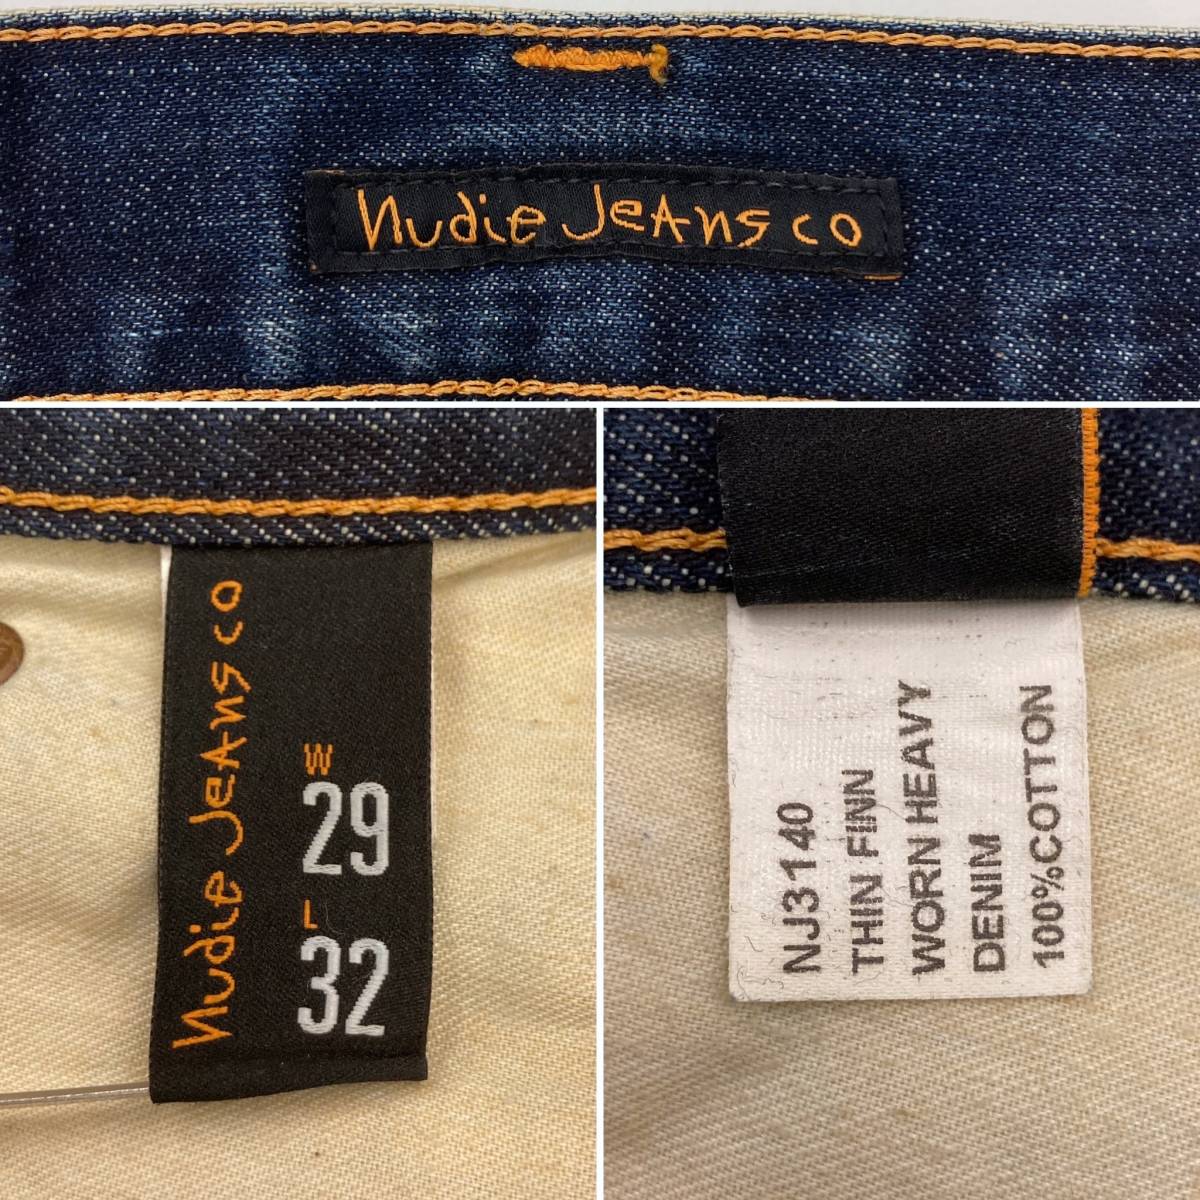 Nudie Jeans THIN FINN イタリア製 ユーズド加工 スキニージーンズ W29 スリム ヌーディージーンズ シンフィン デニムパンツ 3020340_画像4